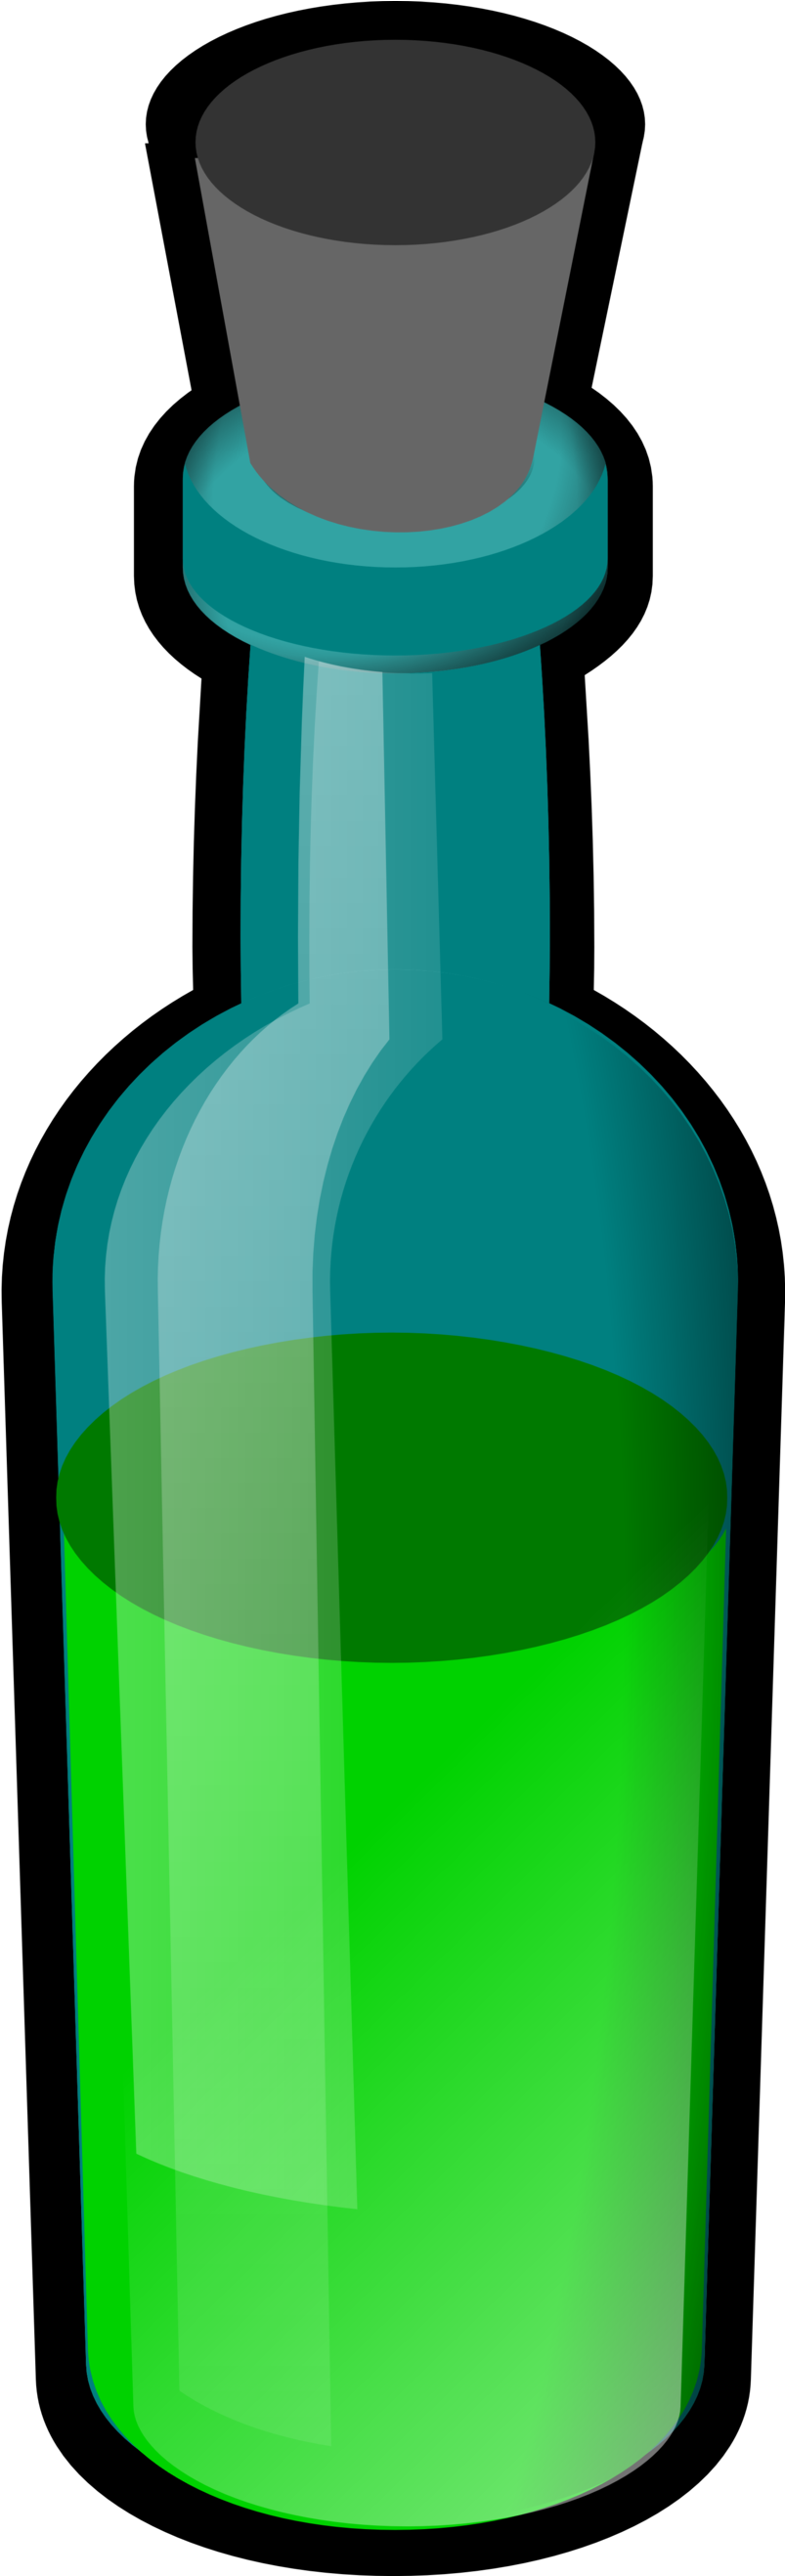 Pse Bottle - Poison Bottle Clip Art (958x2635)